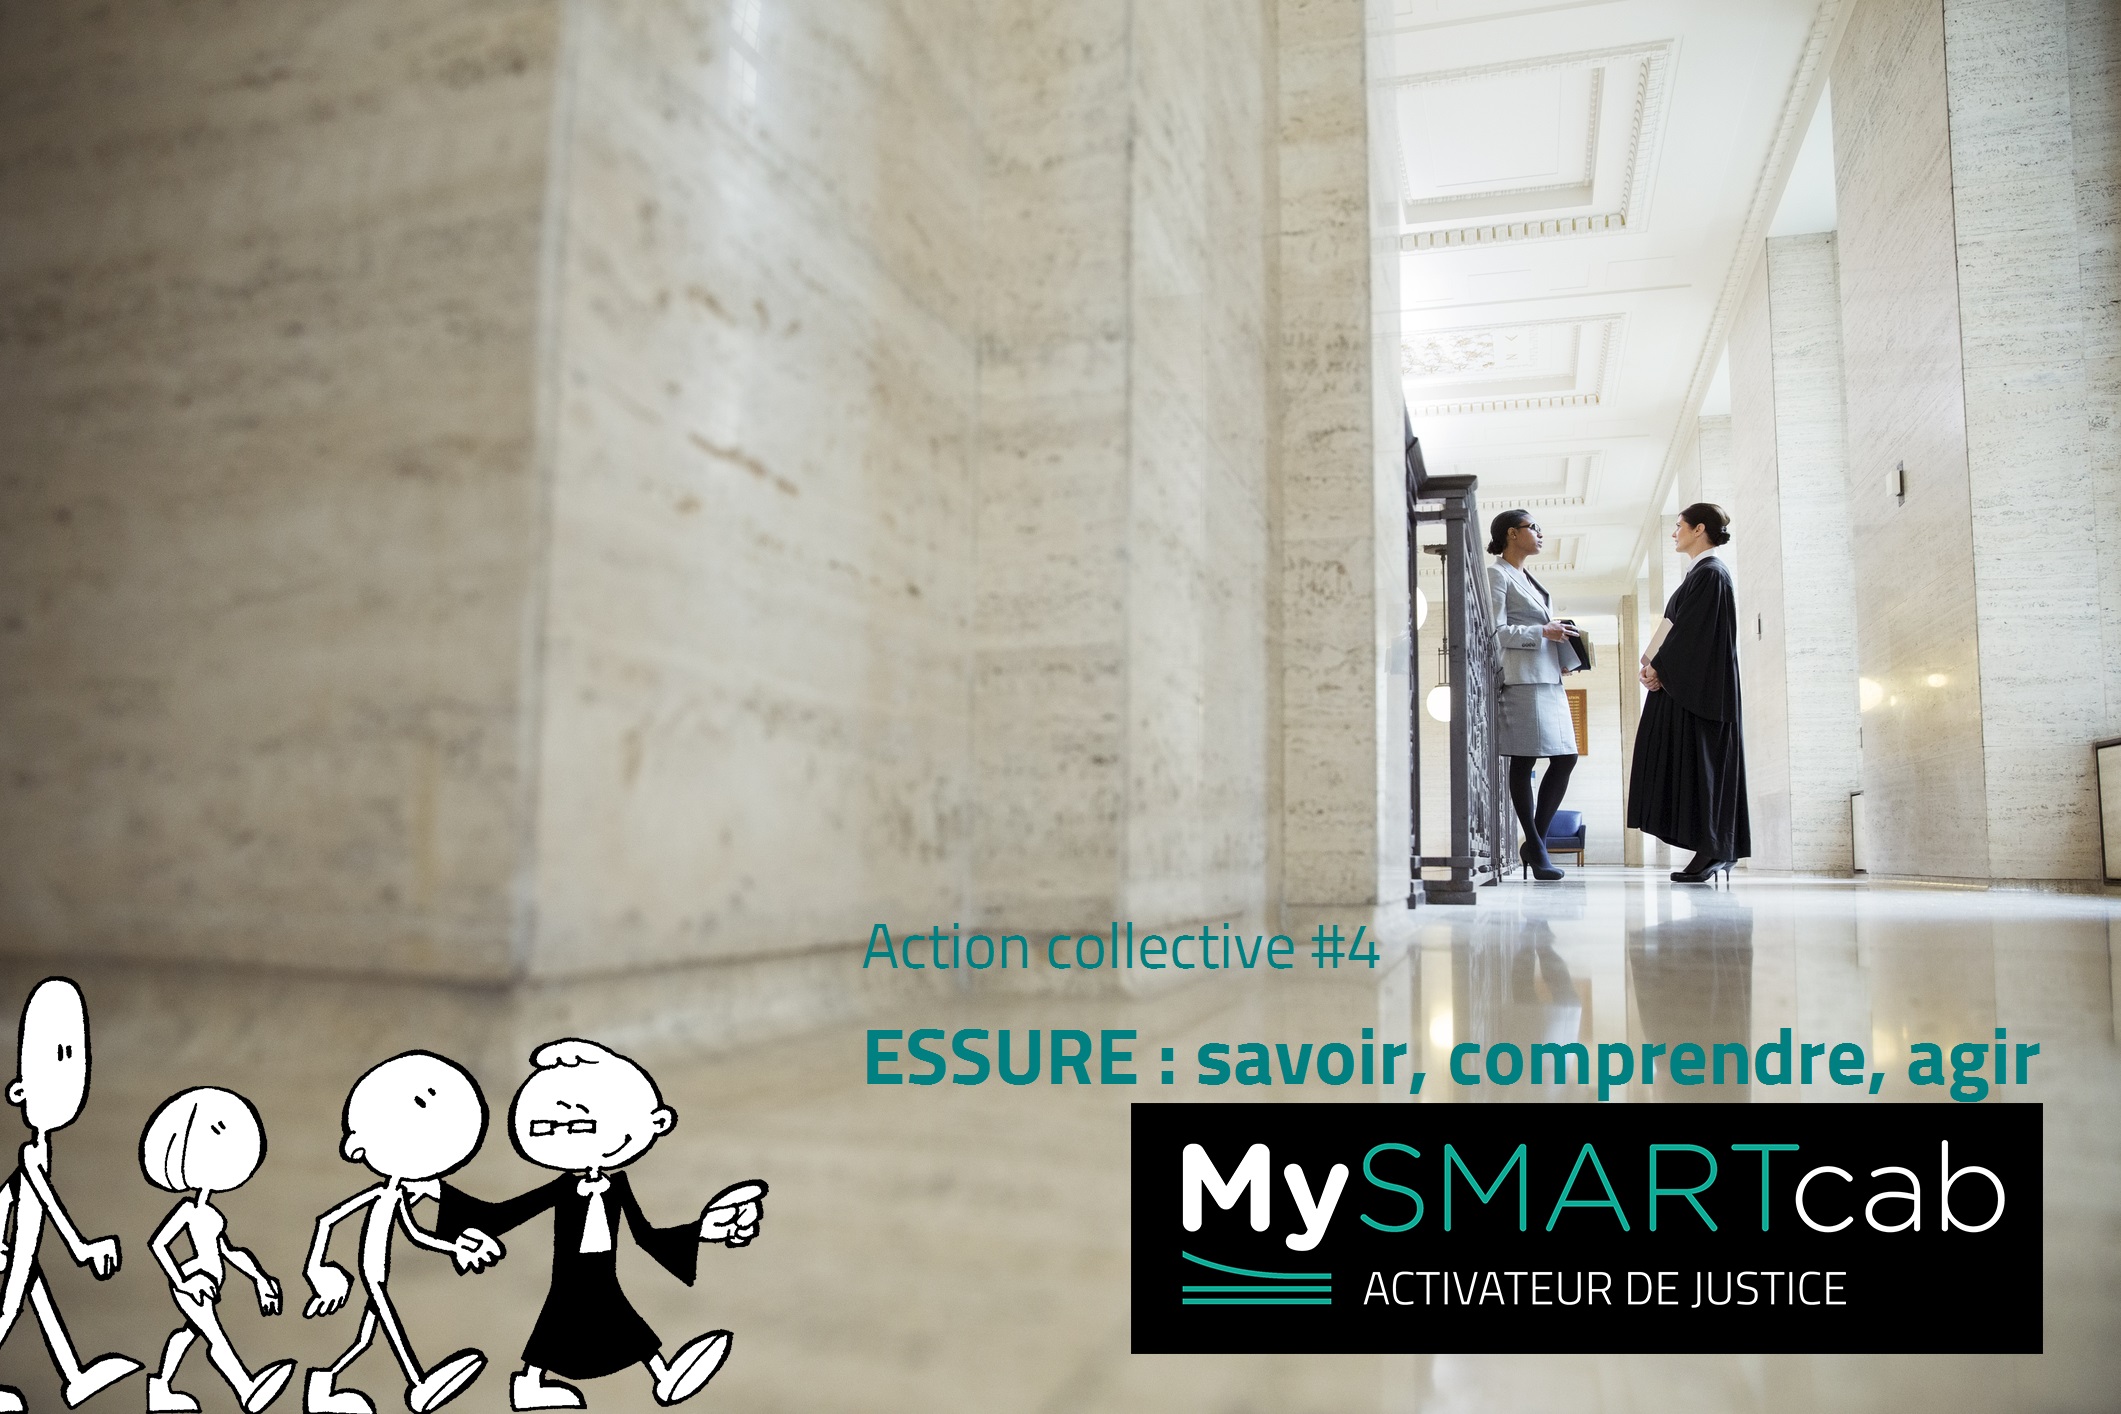 IMPLANTS CONTRACEPTIFS #ESSURE : action collective lancée depuis la plateforme mySMARTcab